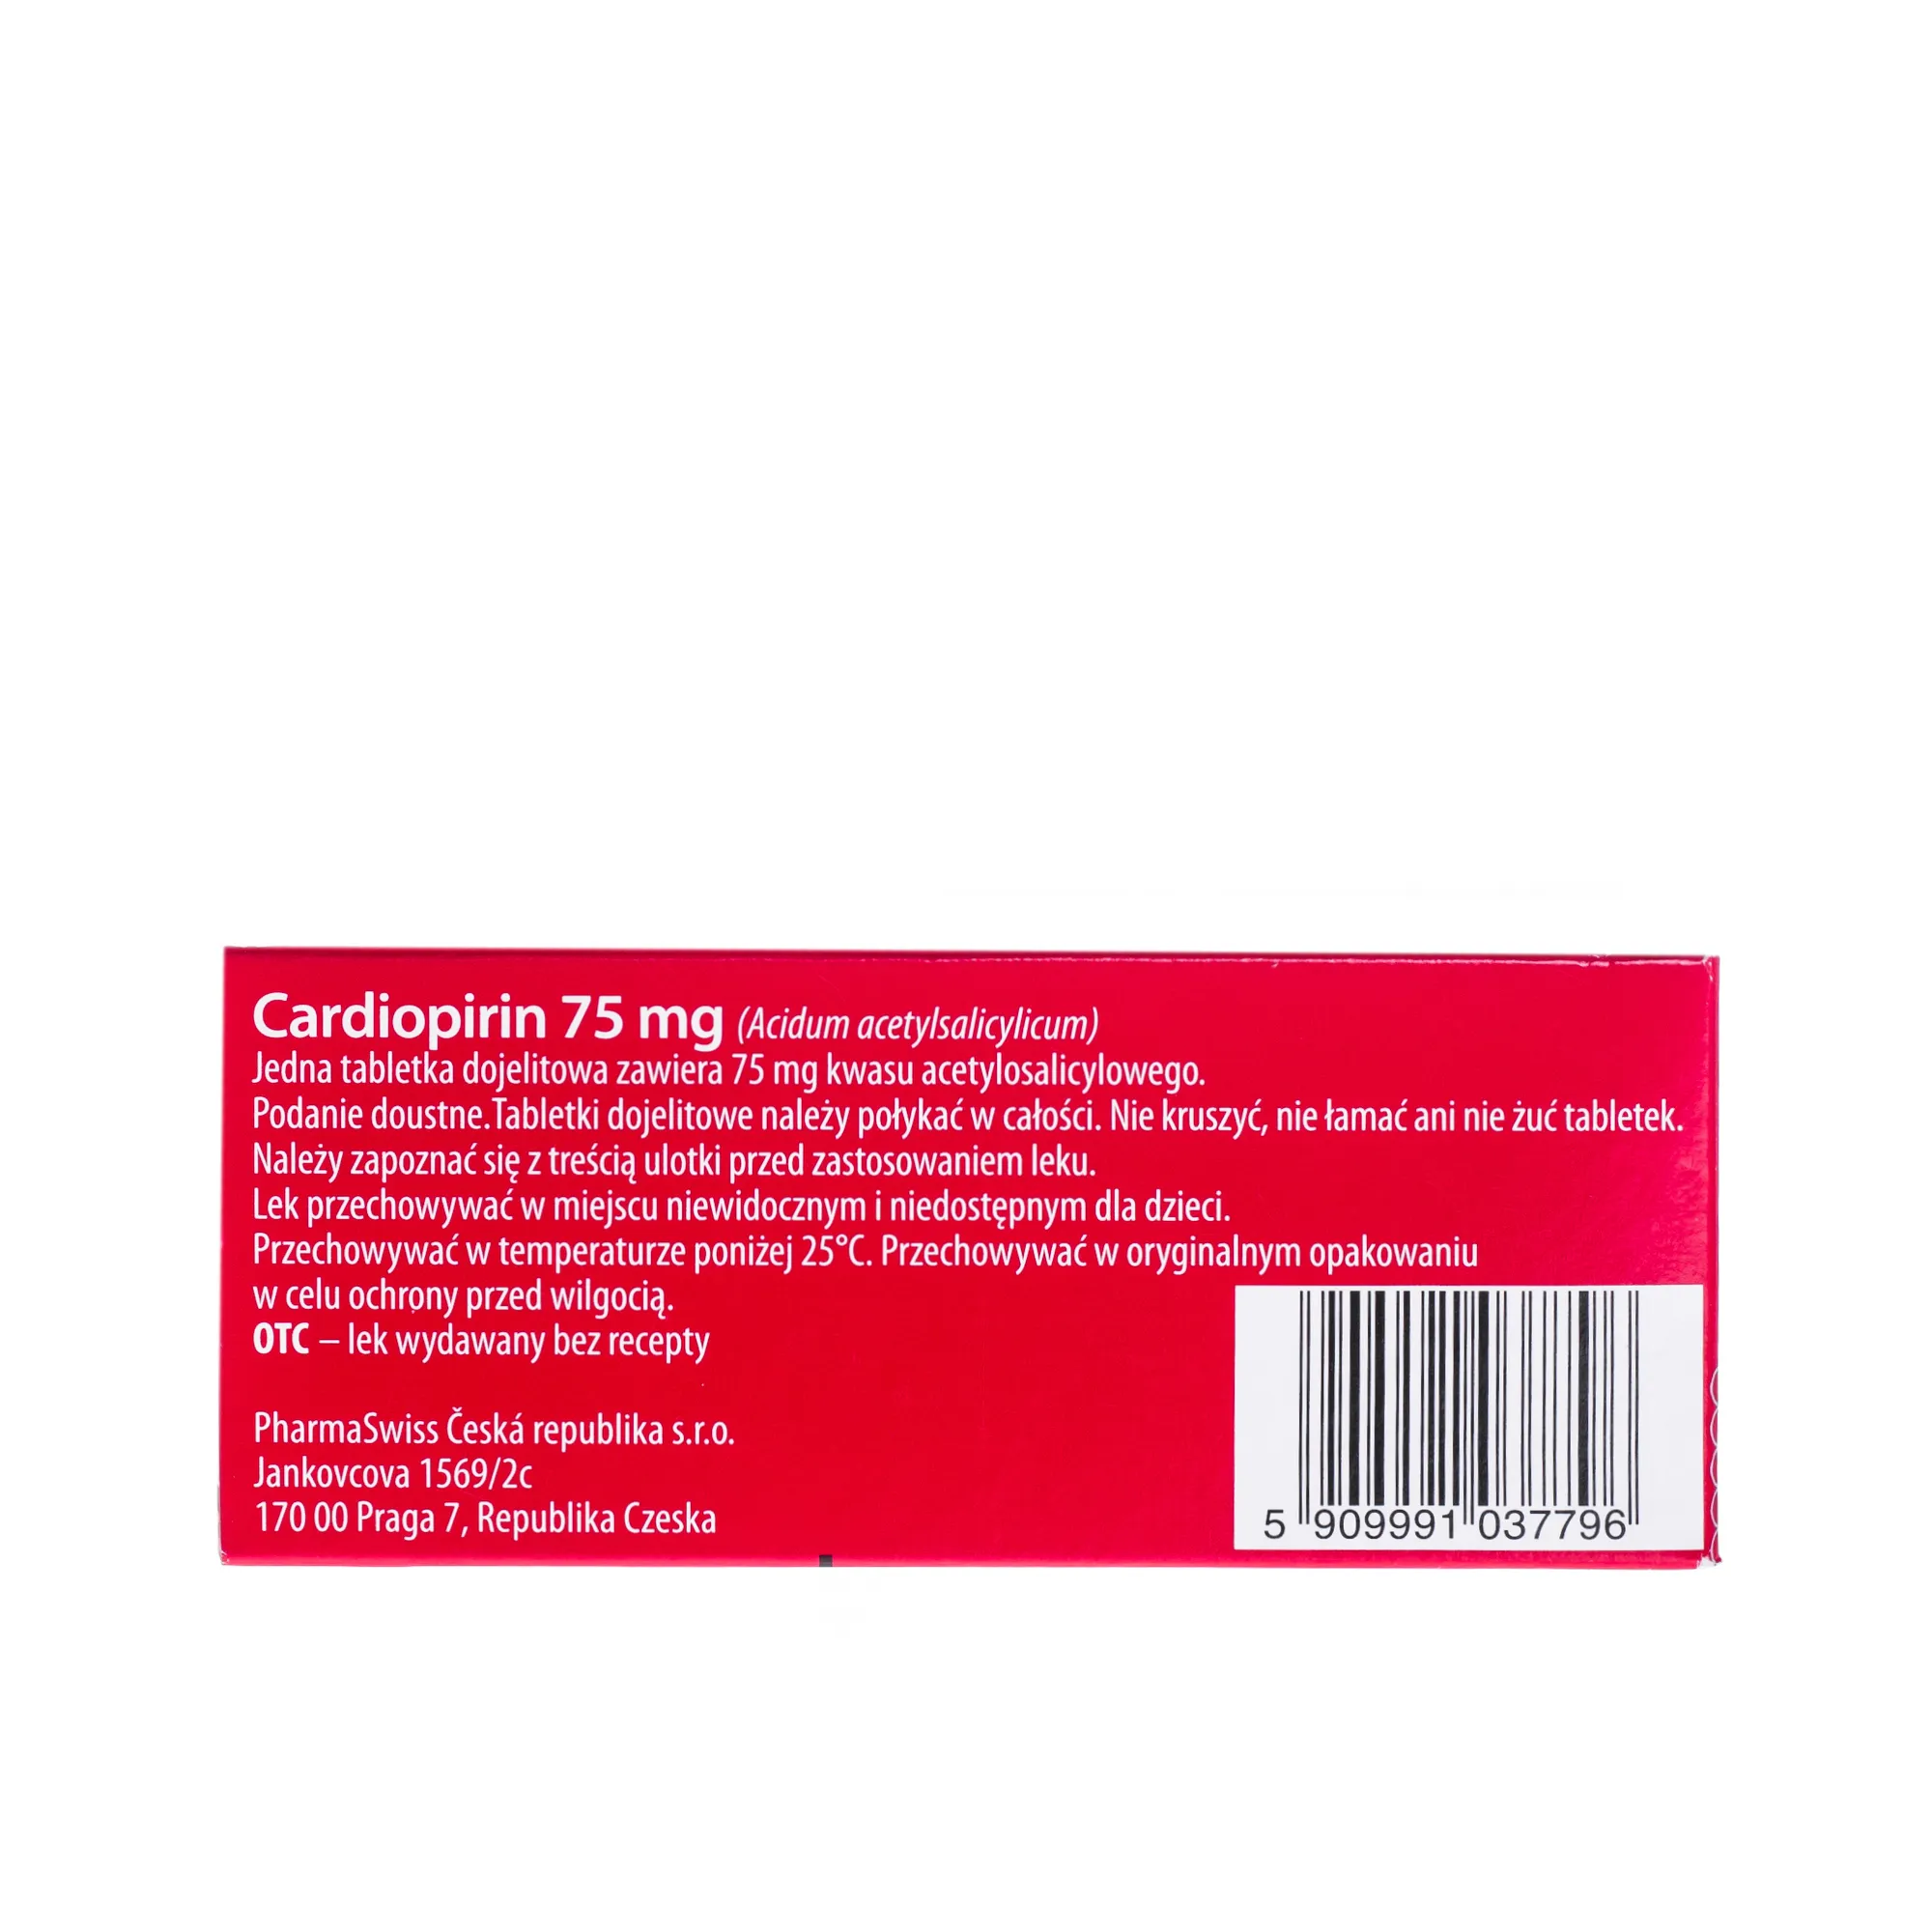 Cardiopirin, 75 mg, tabletki dojelitowe, 60 tabletek 